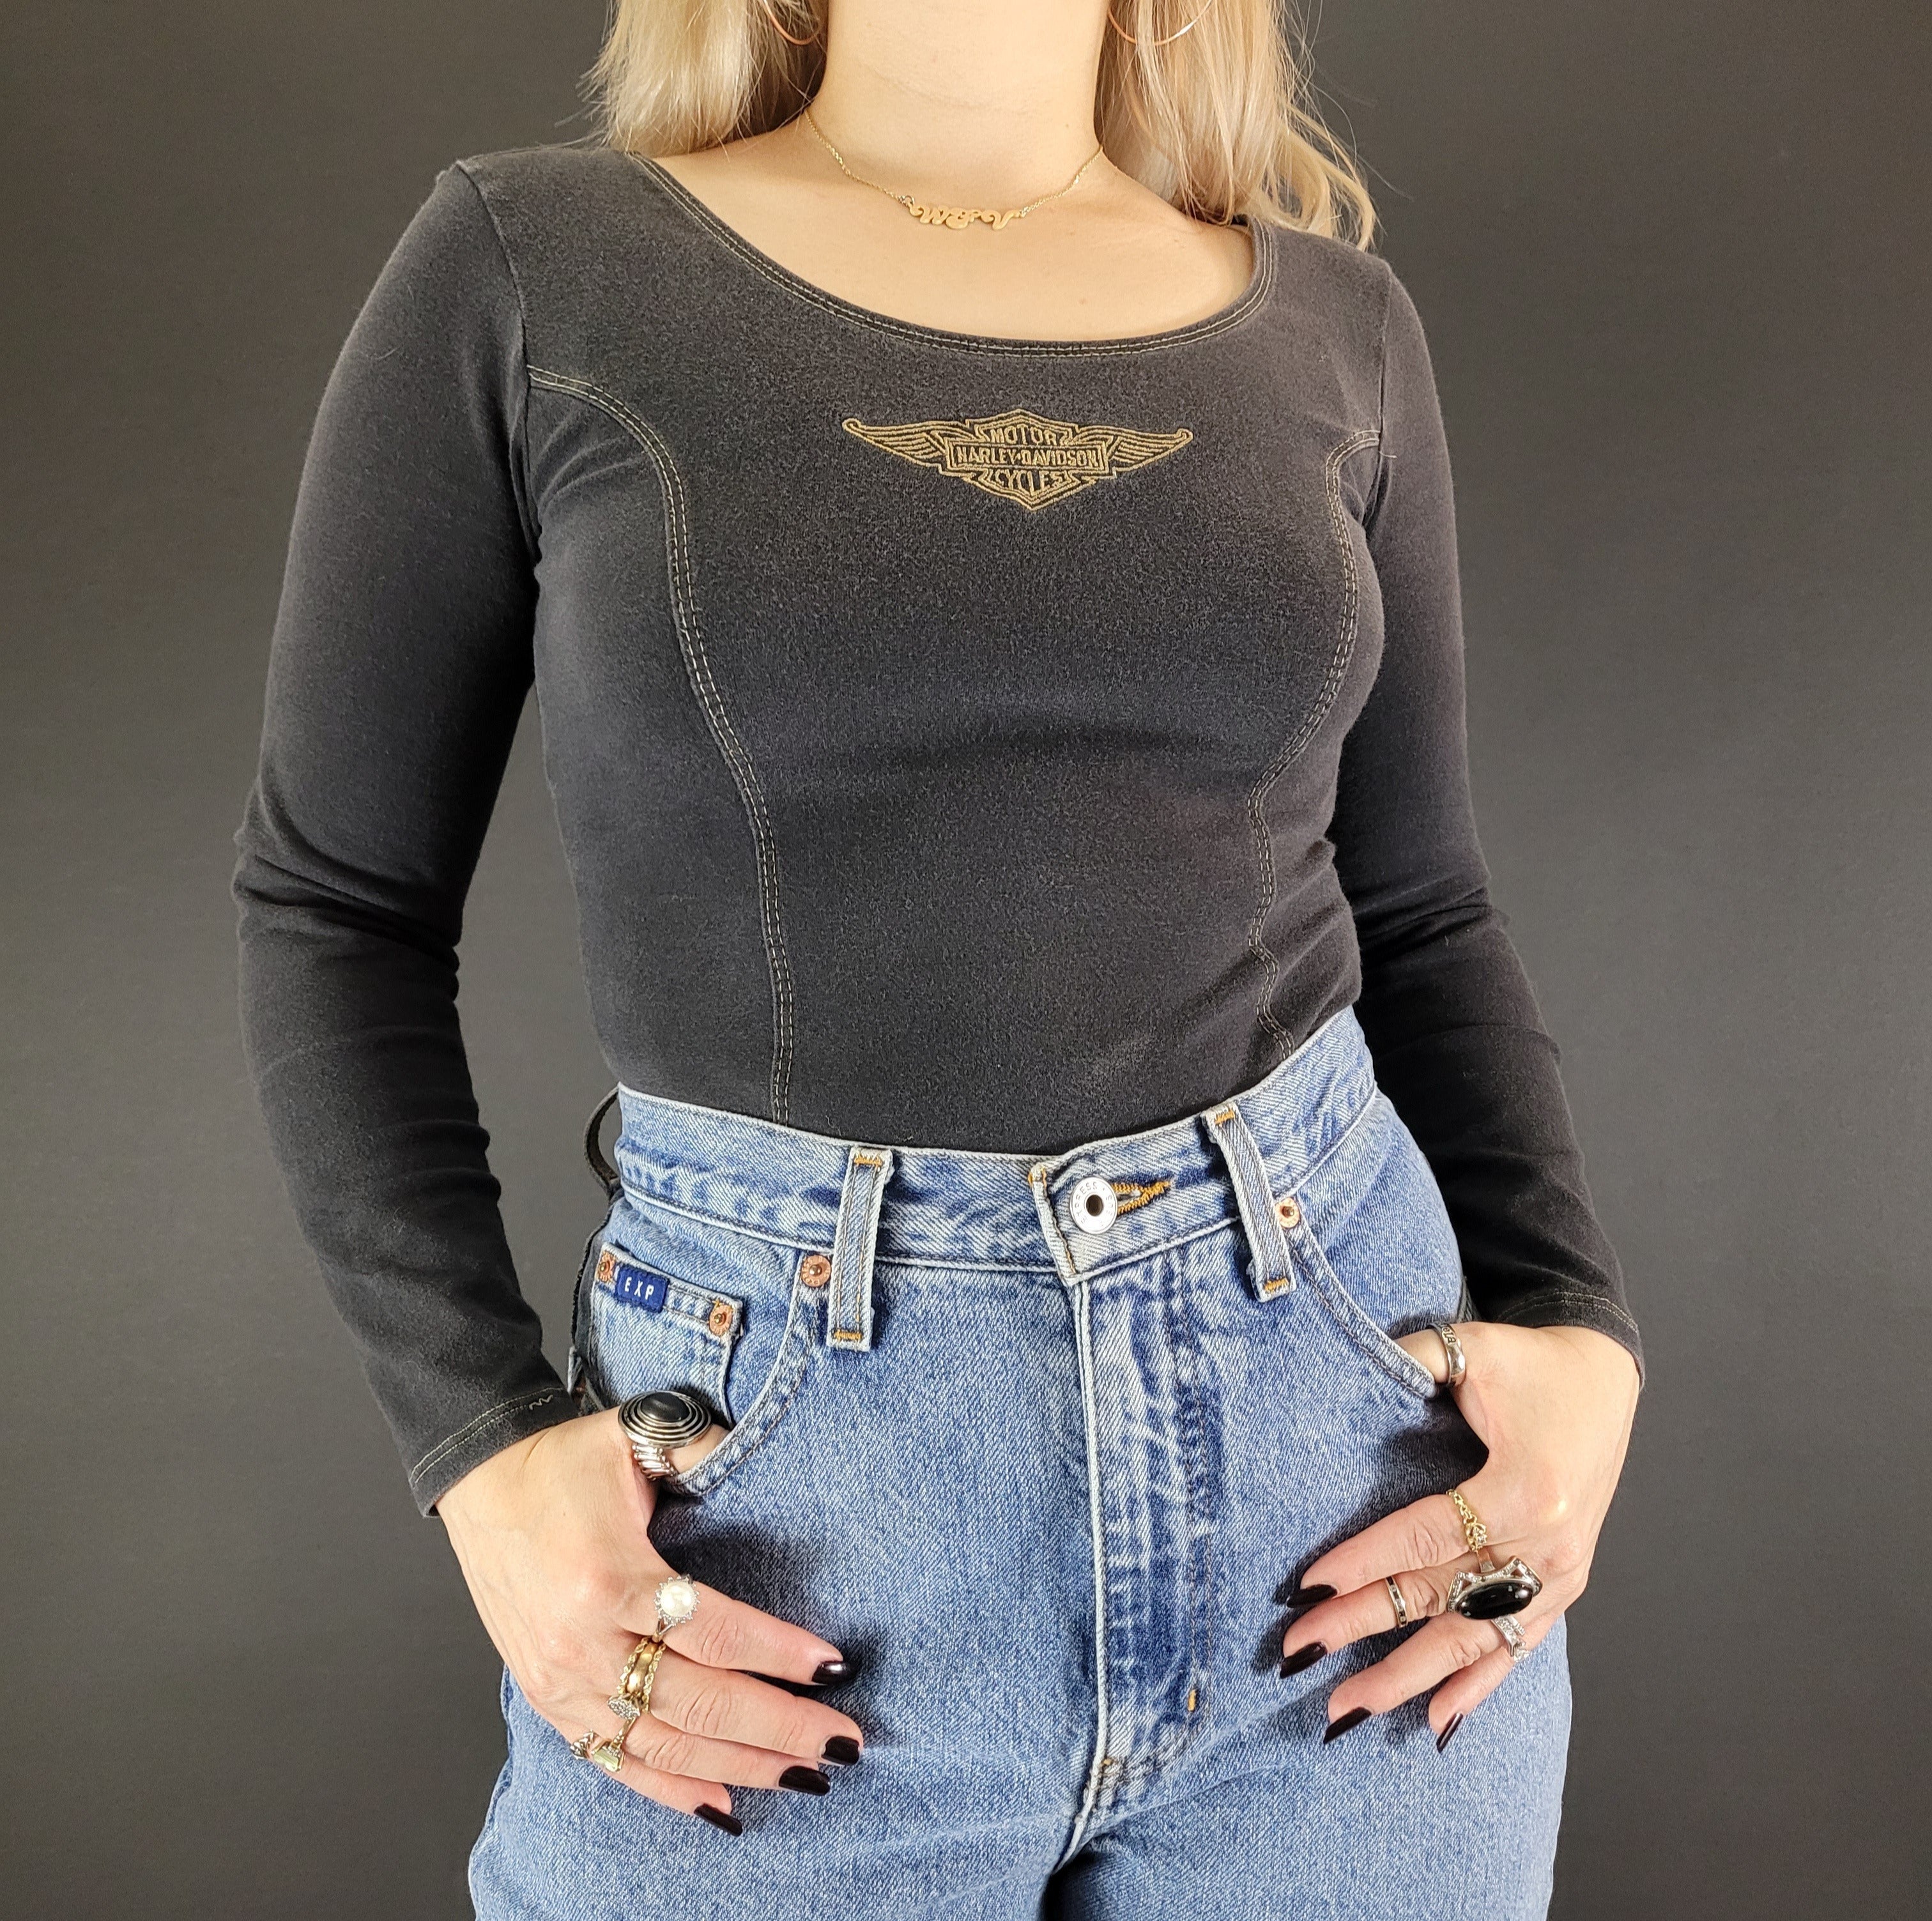 Women's Harley Davidson Thermal shirt size Large - Depop